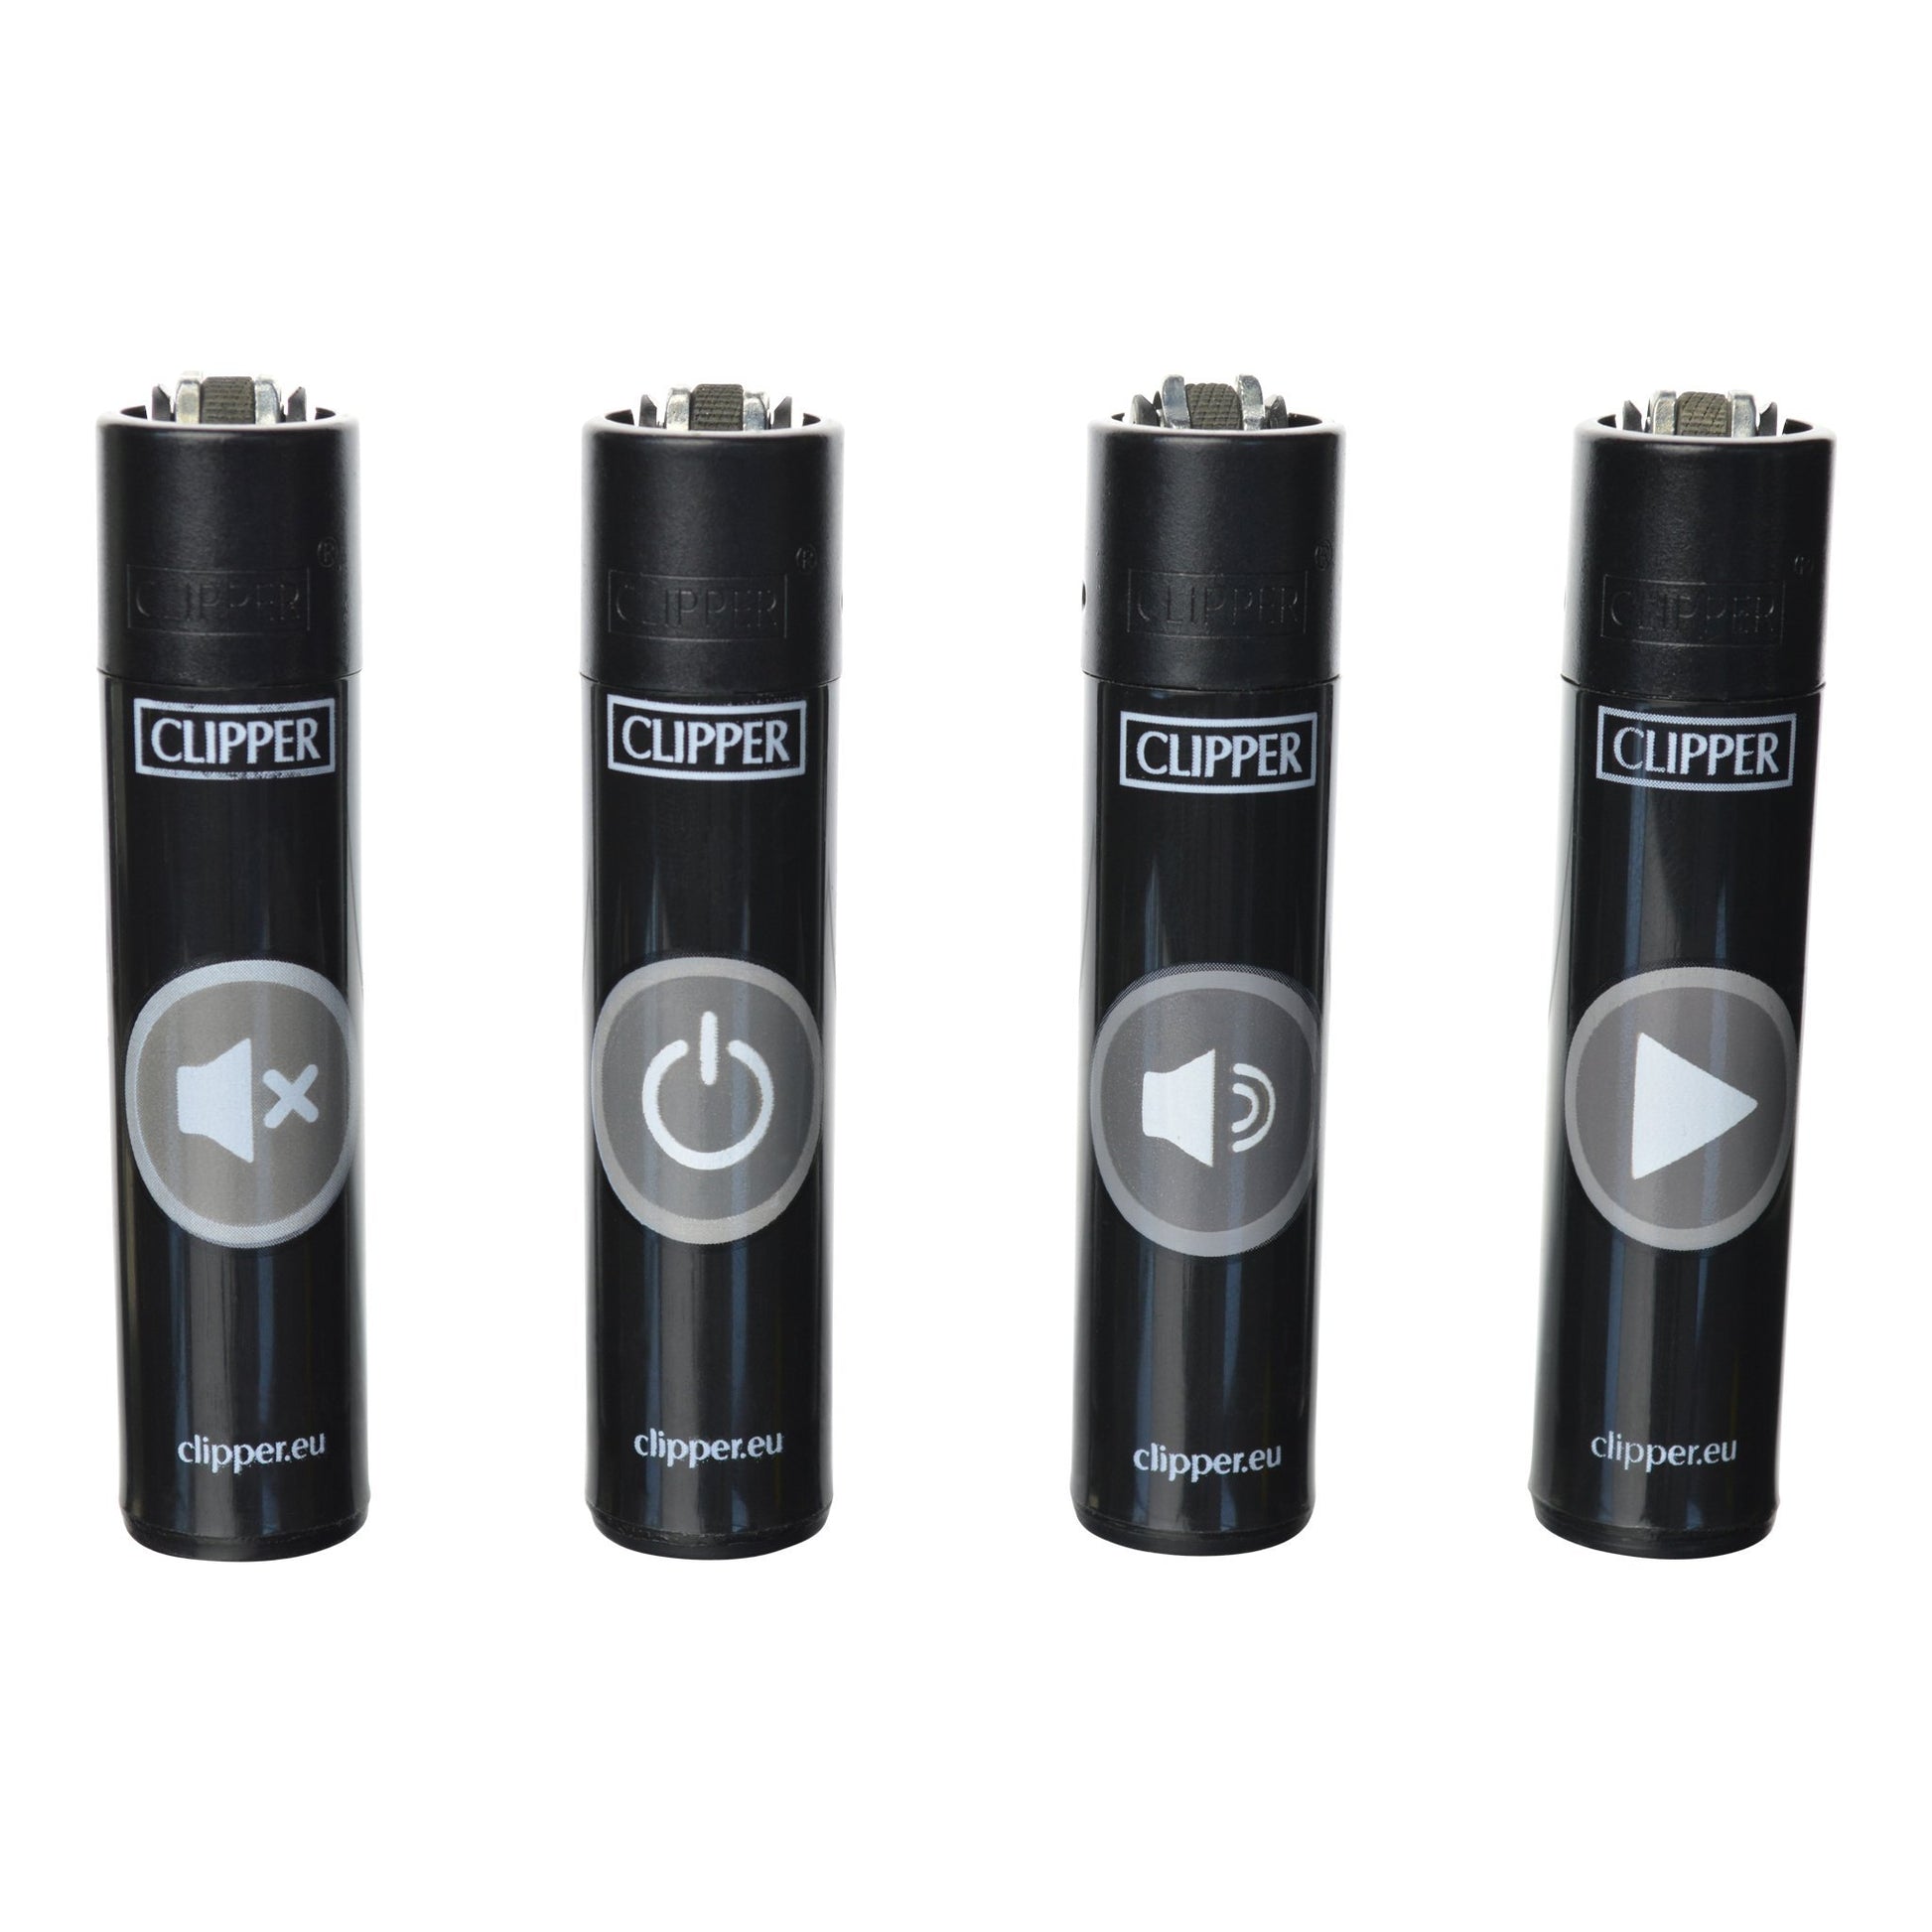 Clipper Lighter - 3 Pack